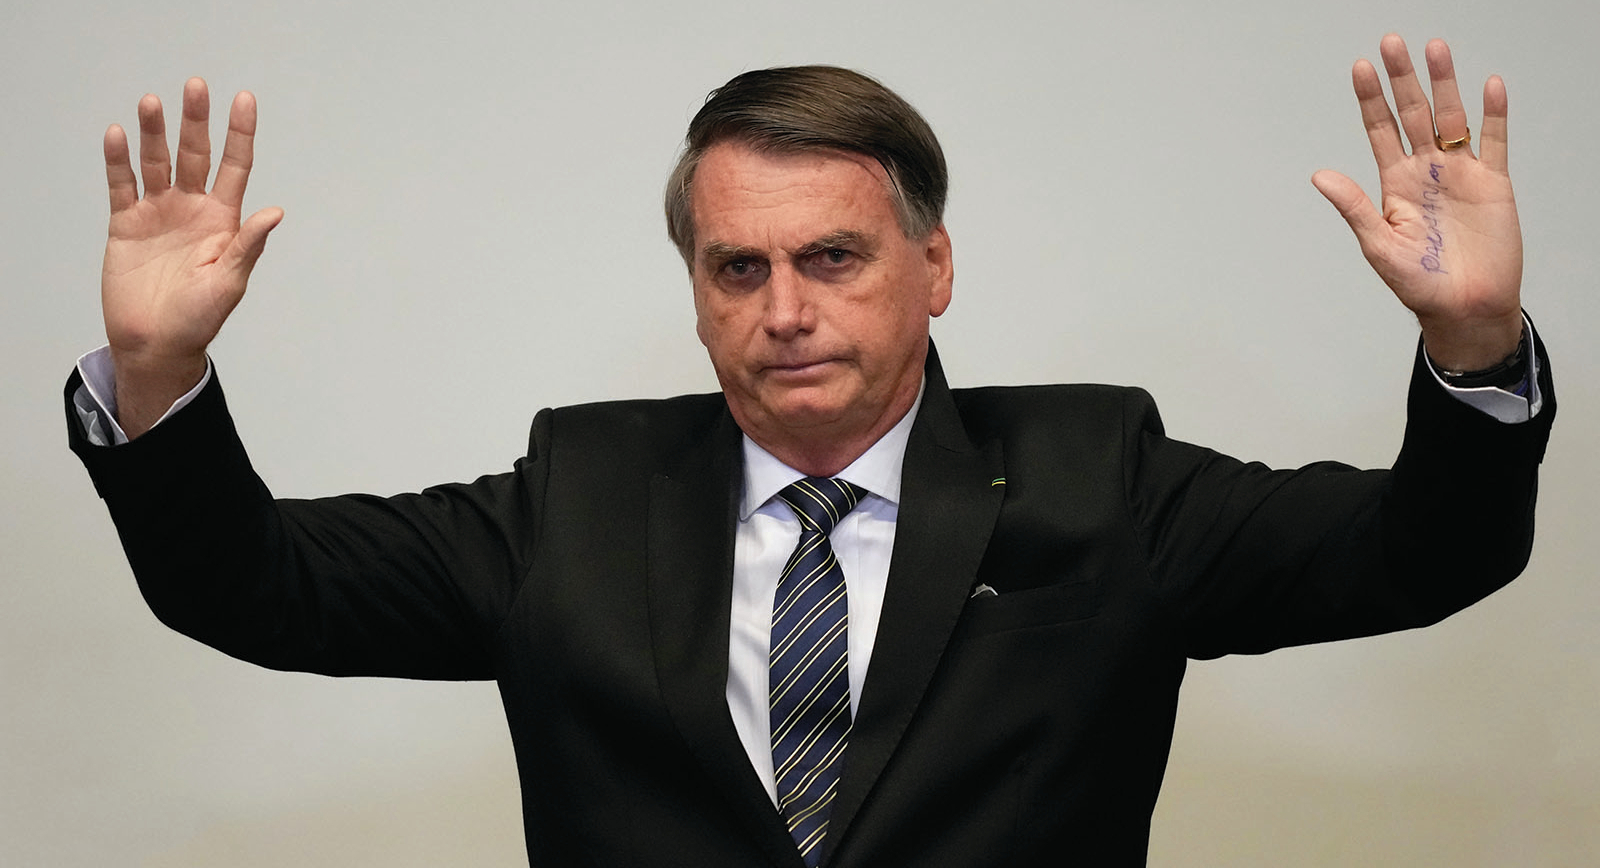 Jair Bolsonaro, sul finire della sua catastrofica presidenza, ha paura di finire in carcere